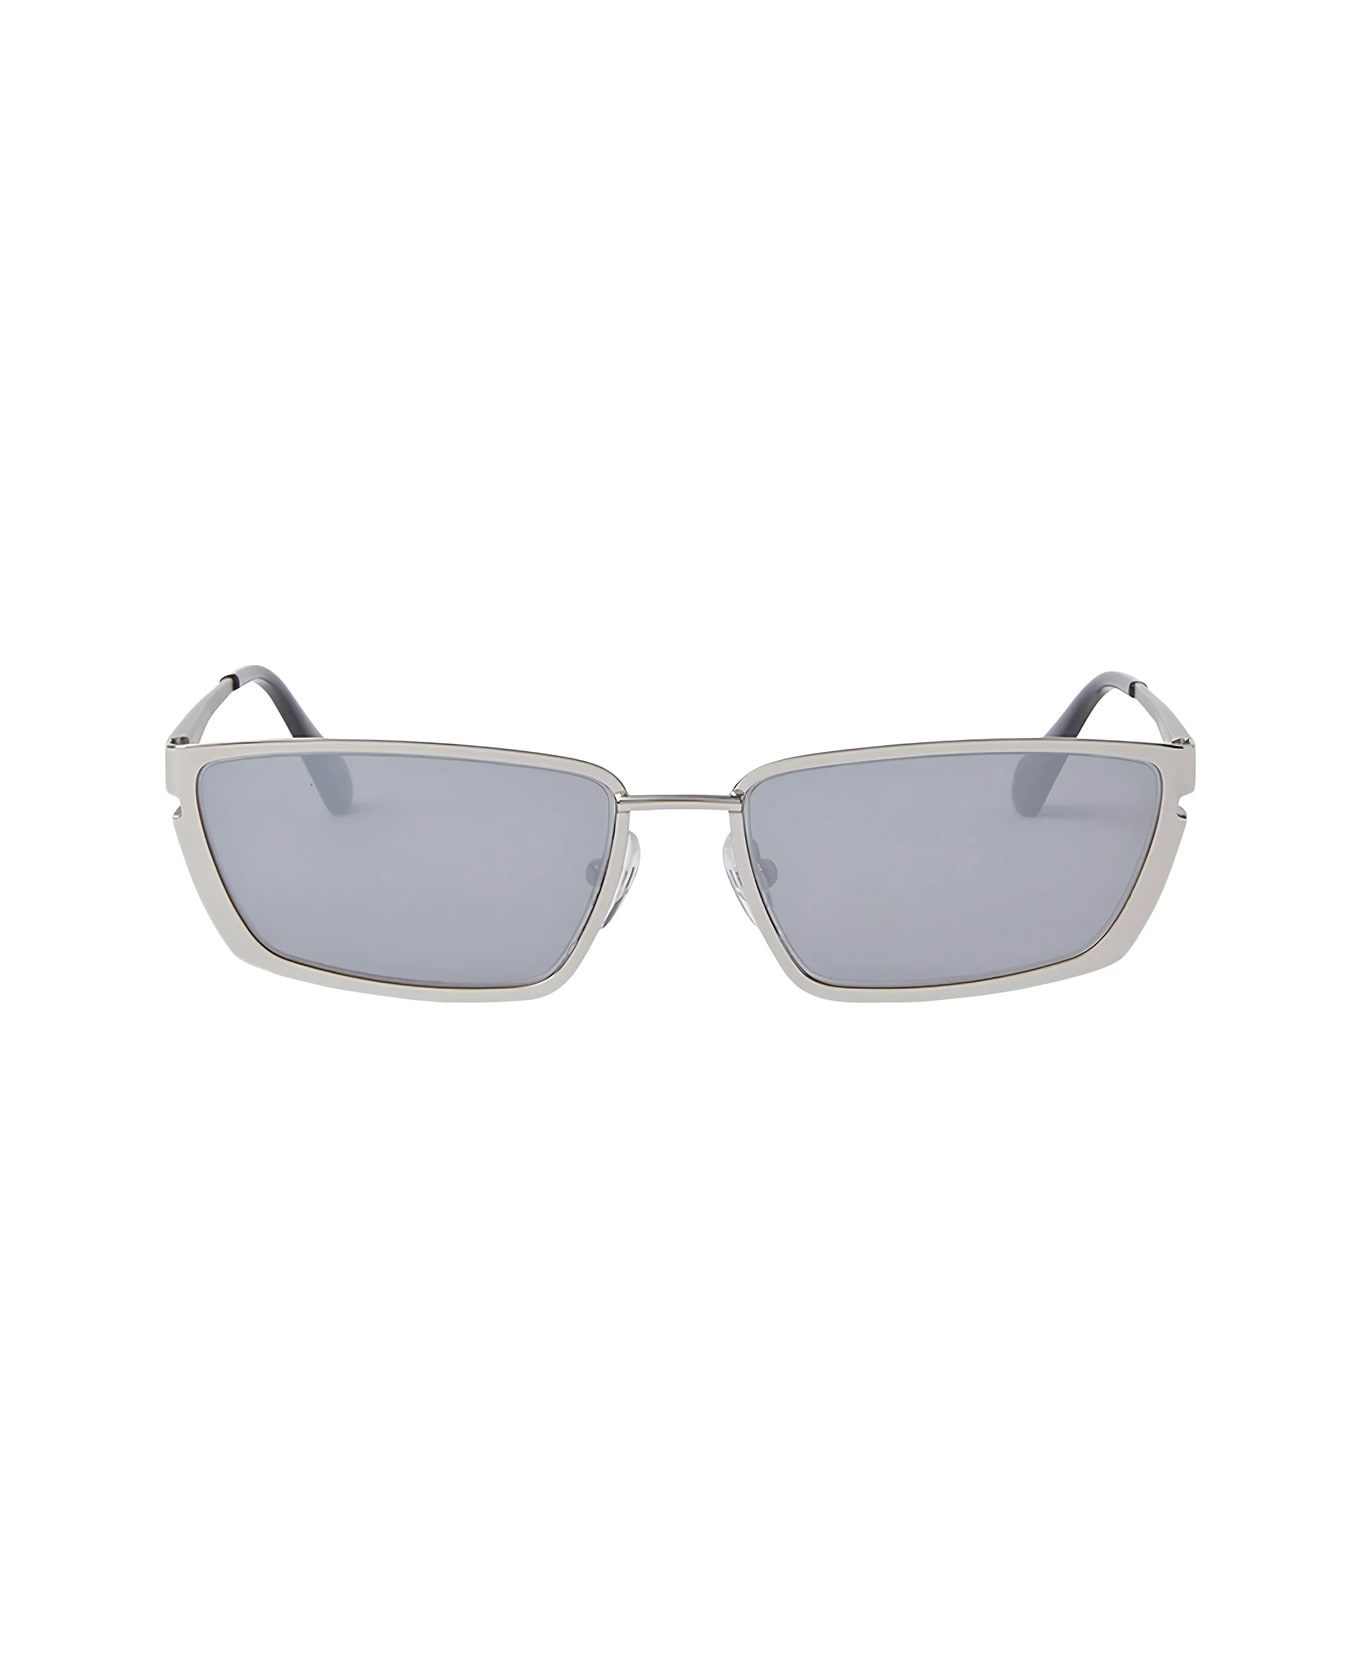 Off-White Oeri119 Richfield 7272 Silver Silver Sunglasses - Argento